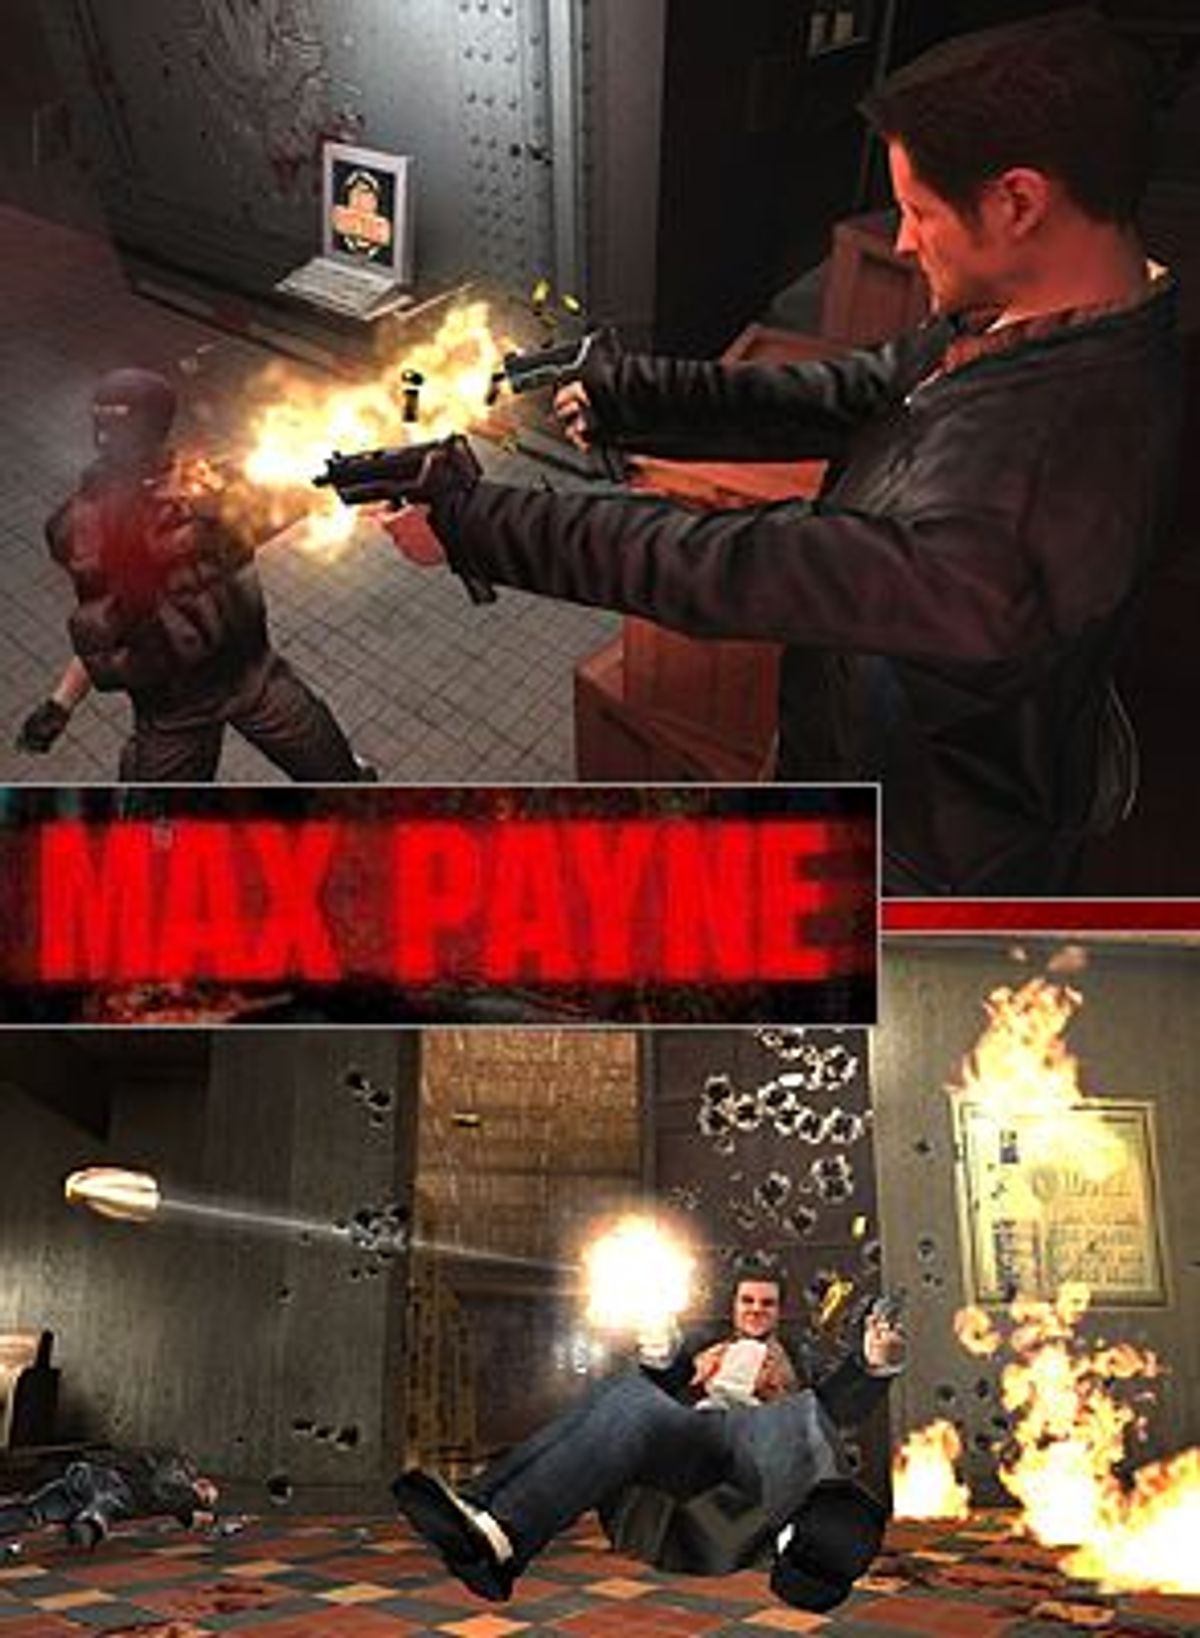 Max Payne 2, Mbah Dewo dot com